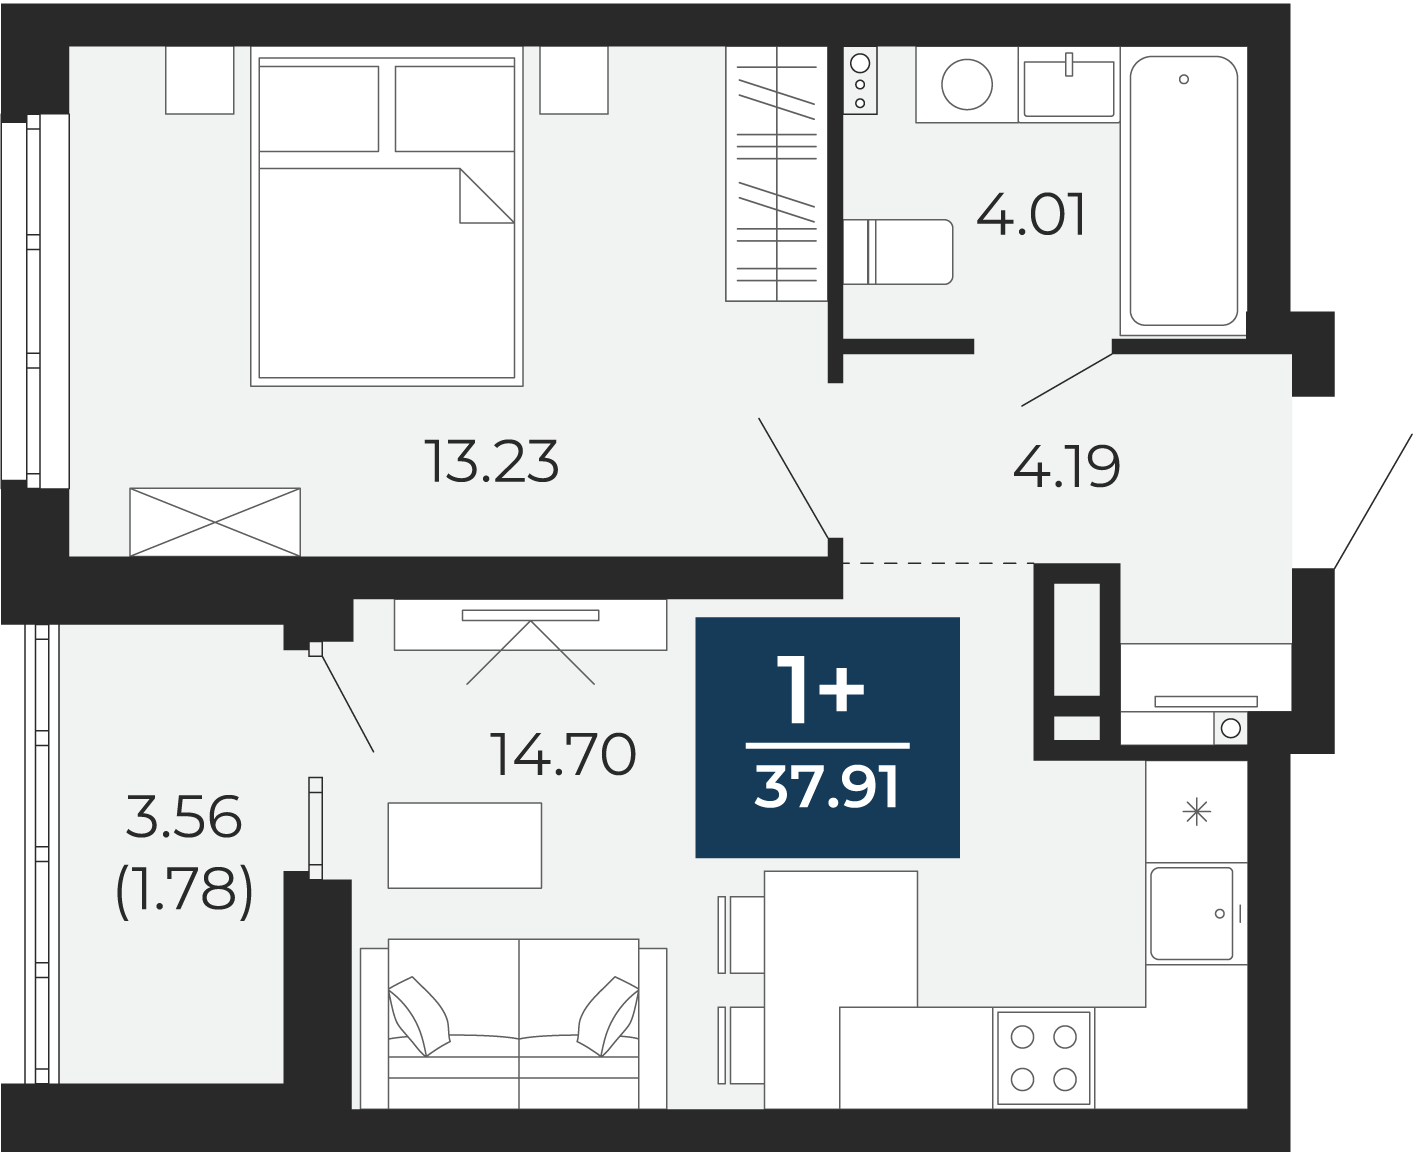 Квартира № 60, 1-комнатная, 37.91 кв. м, 3 этаж